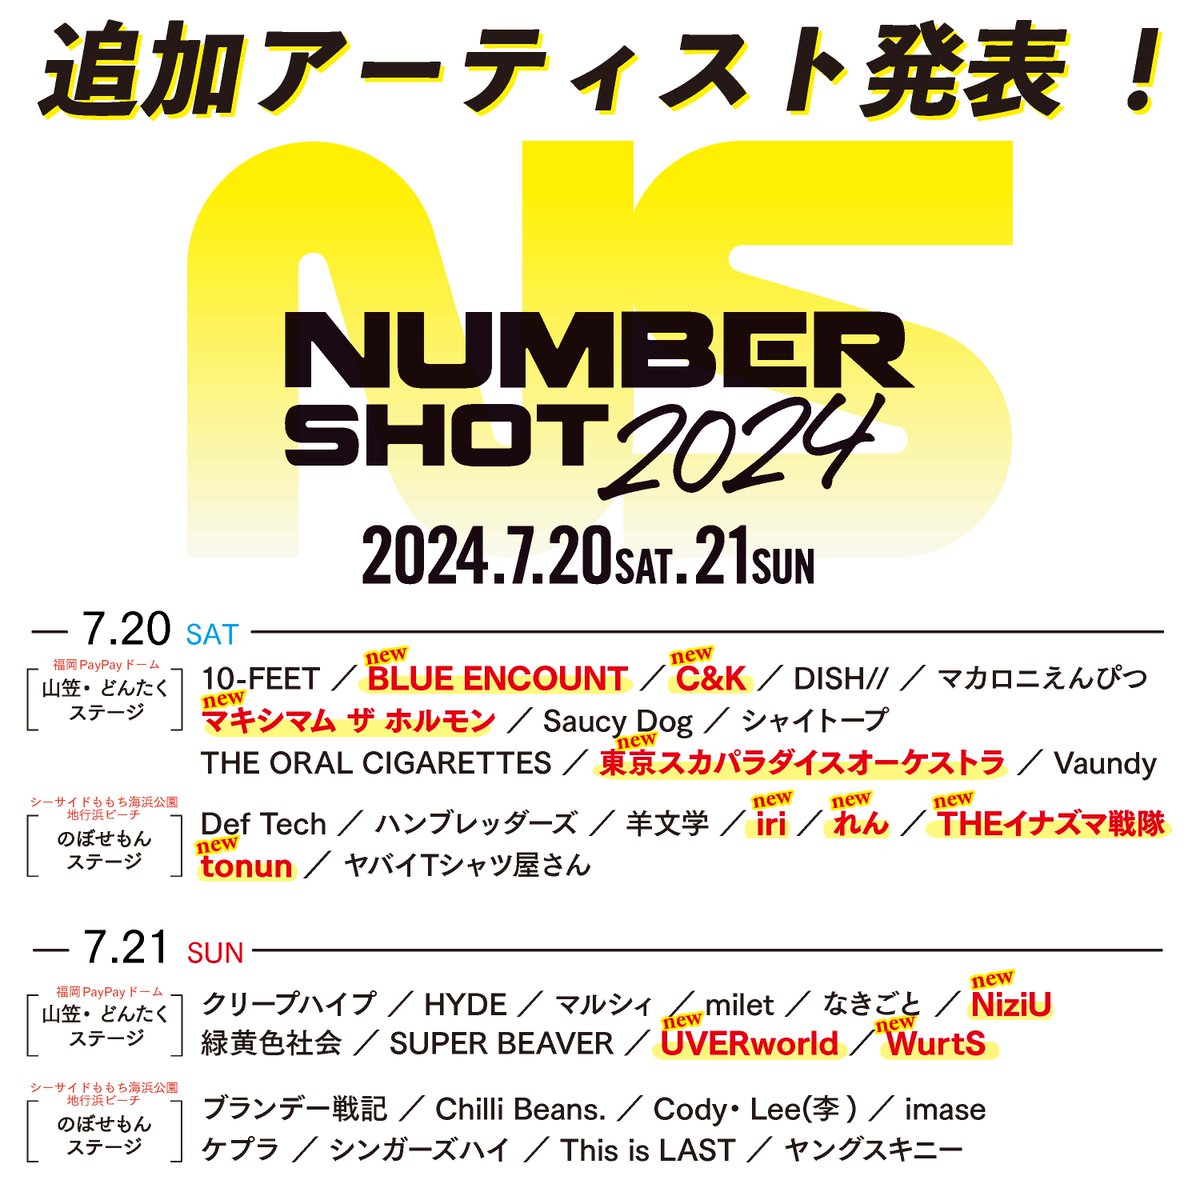 ／
7月21日(日)「NUMBER SHOT2024」に
NiziUの出演が決定！！
＼

九州最大の夏フェス！
渾身のパフォーマンスをお見逃しなく👀

✅詳細はコチラ
🔗 niziu.com/s/n123/page/ne… 
🎸numbershot.jp/2024/

#NiziU #ニジュー #니쥬 #WithU
#NUMBERSHOT #ナンバーショット